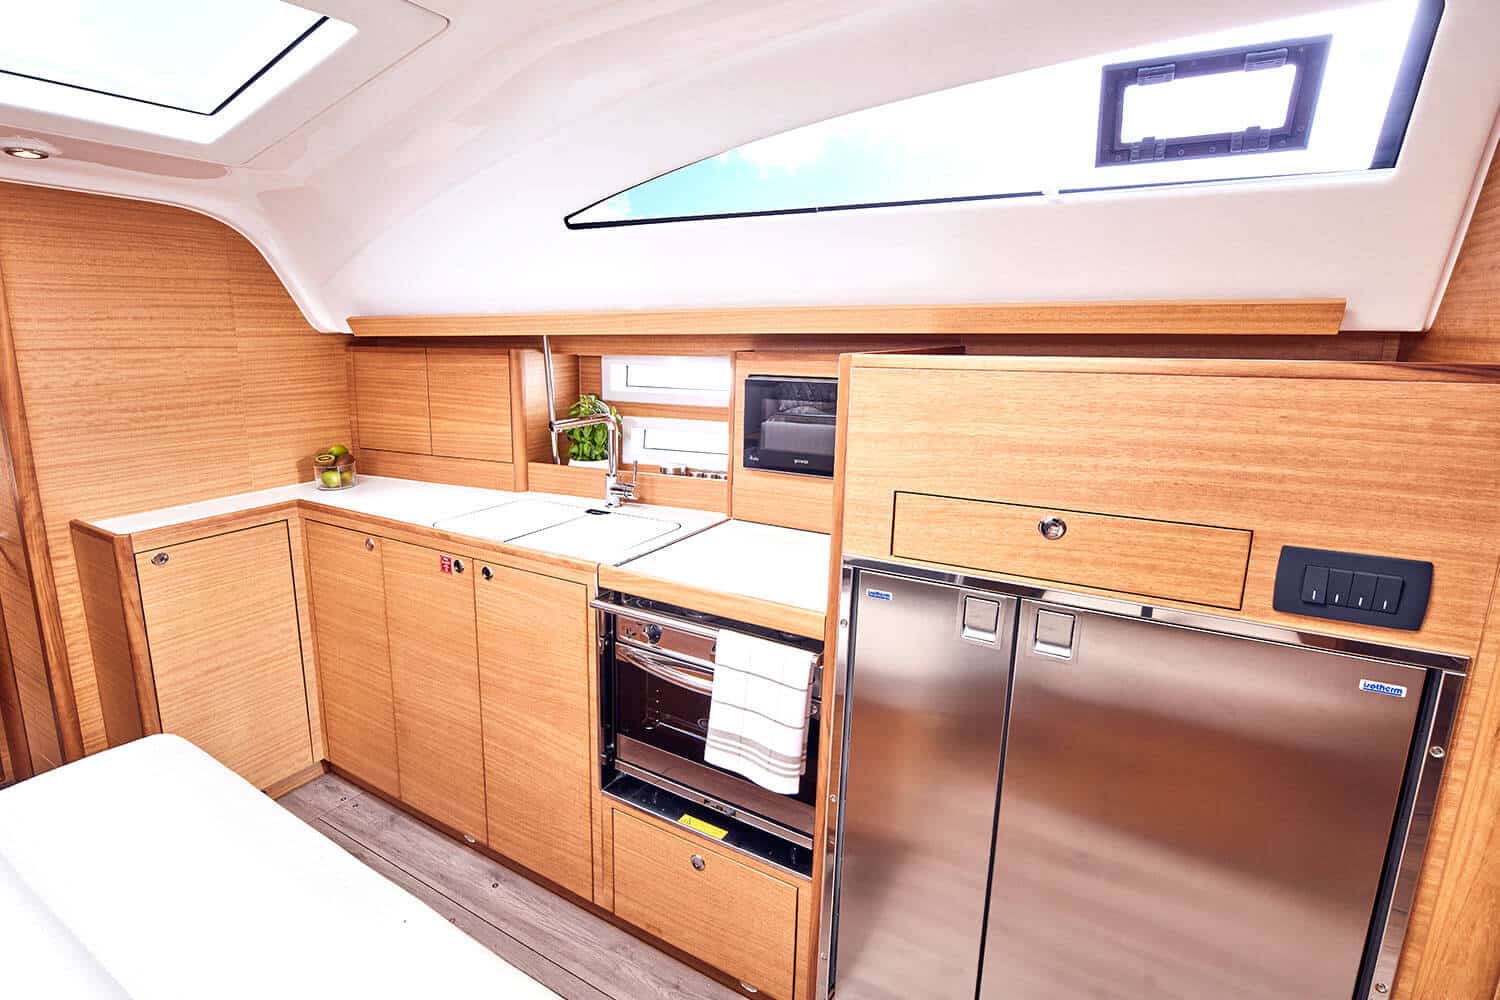 Eine moderne, kompakte Küche in einer Segelyacht mit hellen Holzschränken, einem Edelstahlkühlschrank, einer eingebauten Mikrowelle, einem Herd und einer kleinen Spüle unter einem hellen Oberlicht.